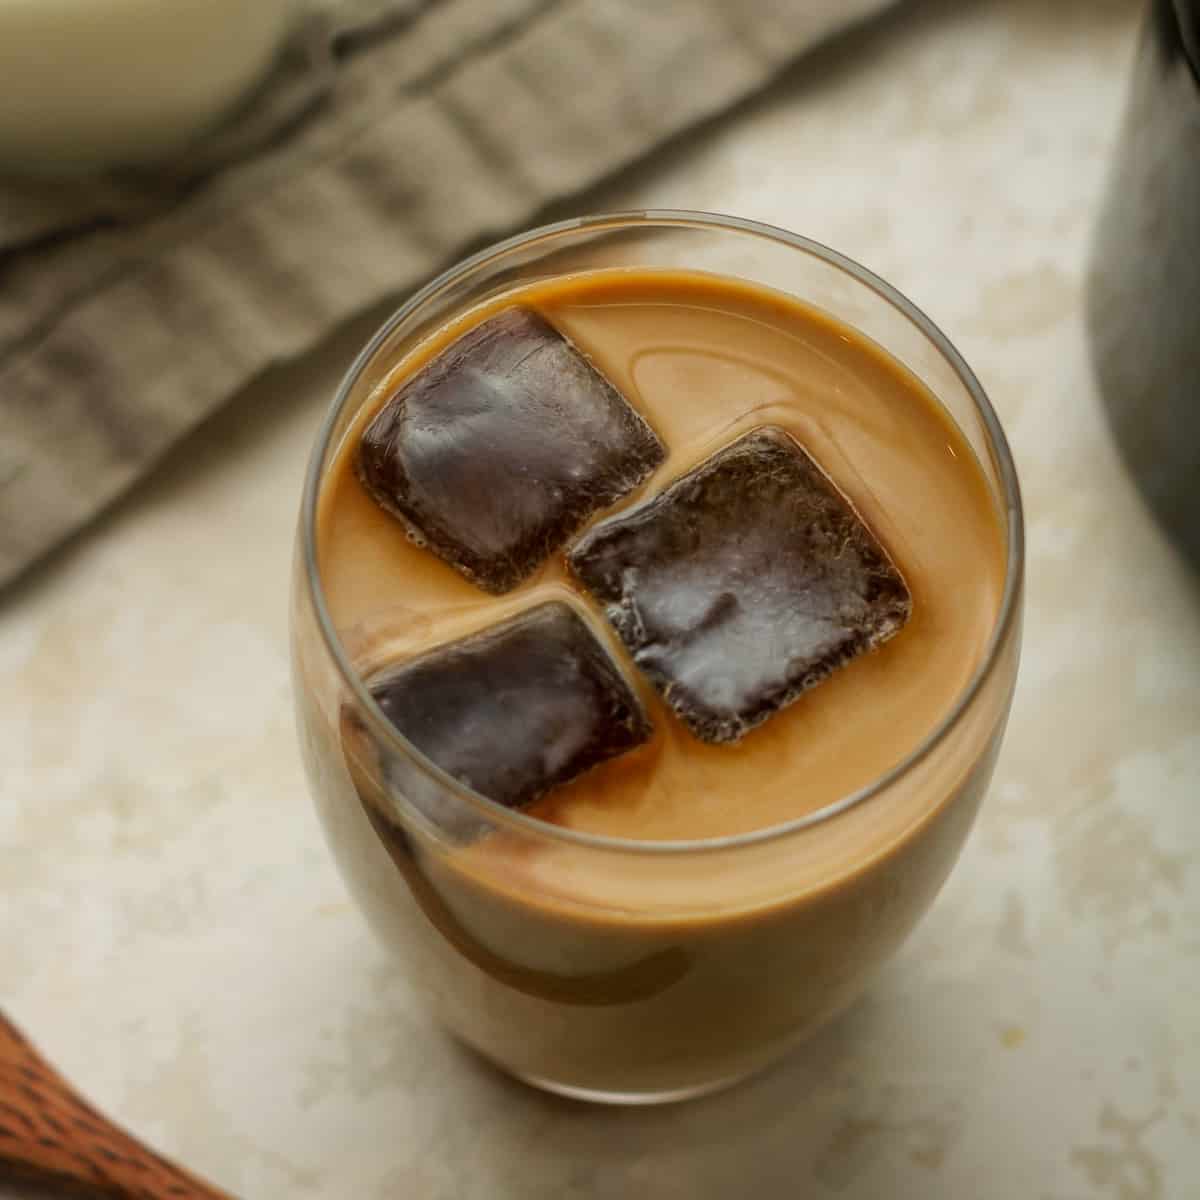 Coffee Ice Cubes (Quick + Easy Recipe)